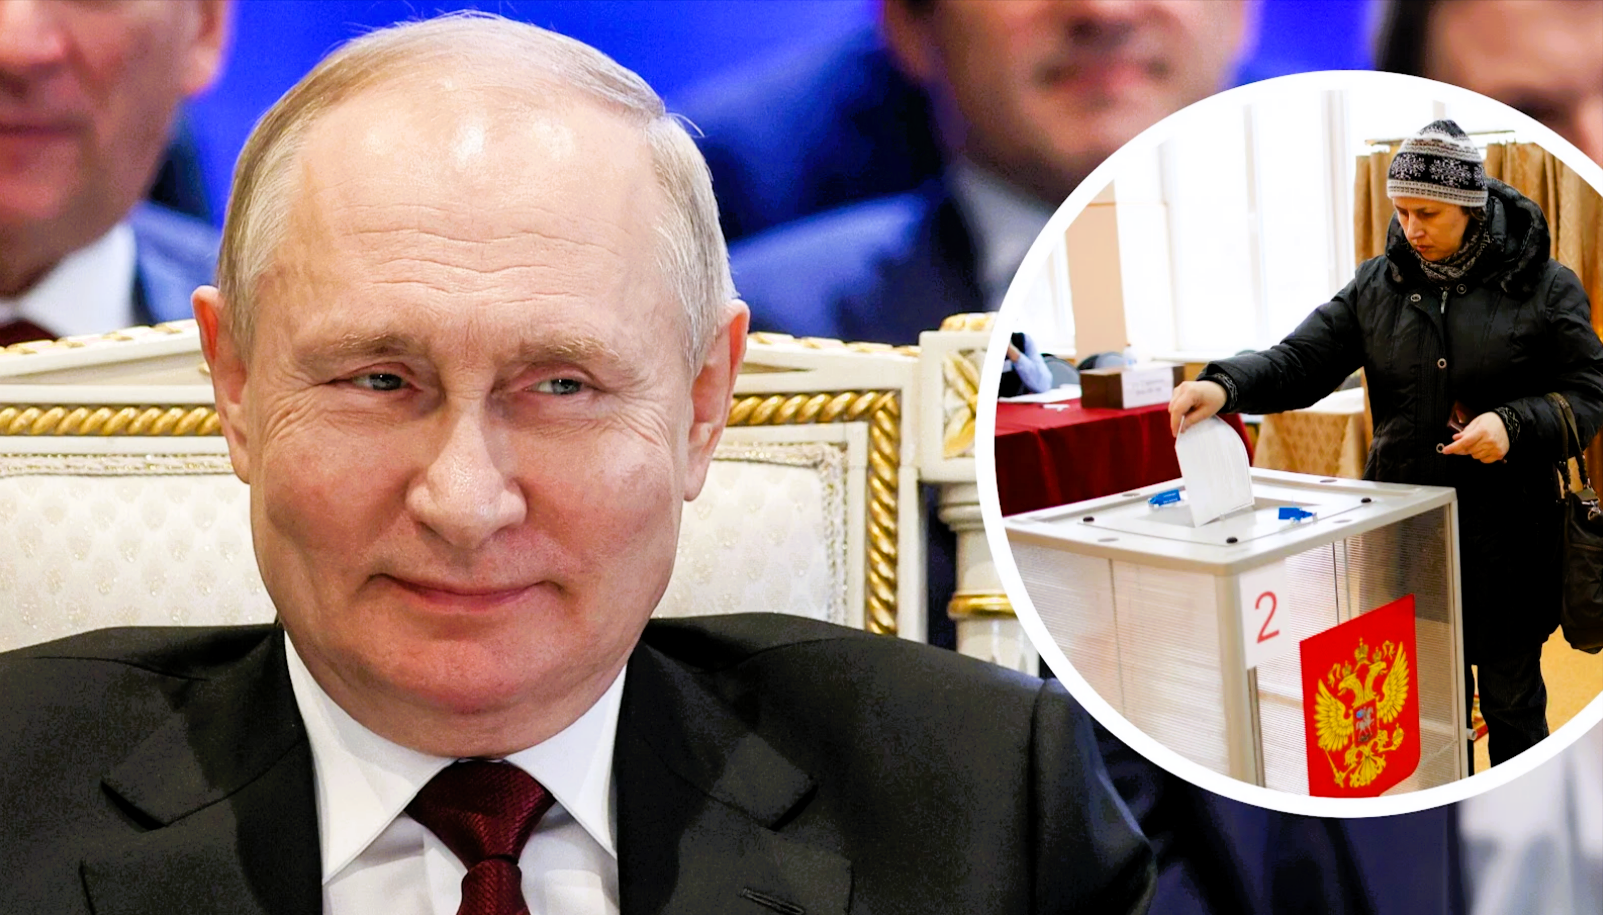 Wahlbetrug in Russland aufgedeckt! Putins aufgeflogen - Russische Zeitung belegt die Trickserei des Kremls